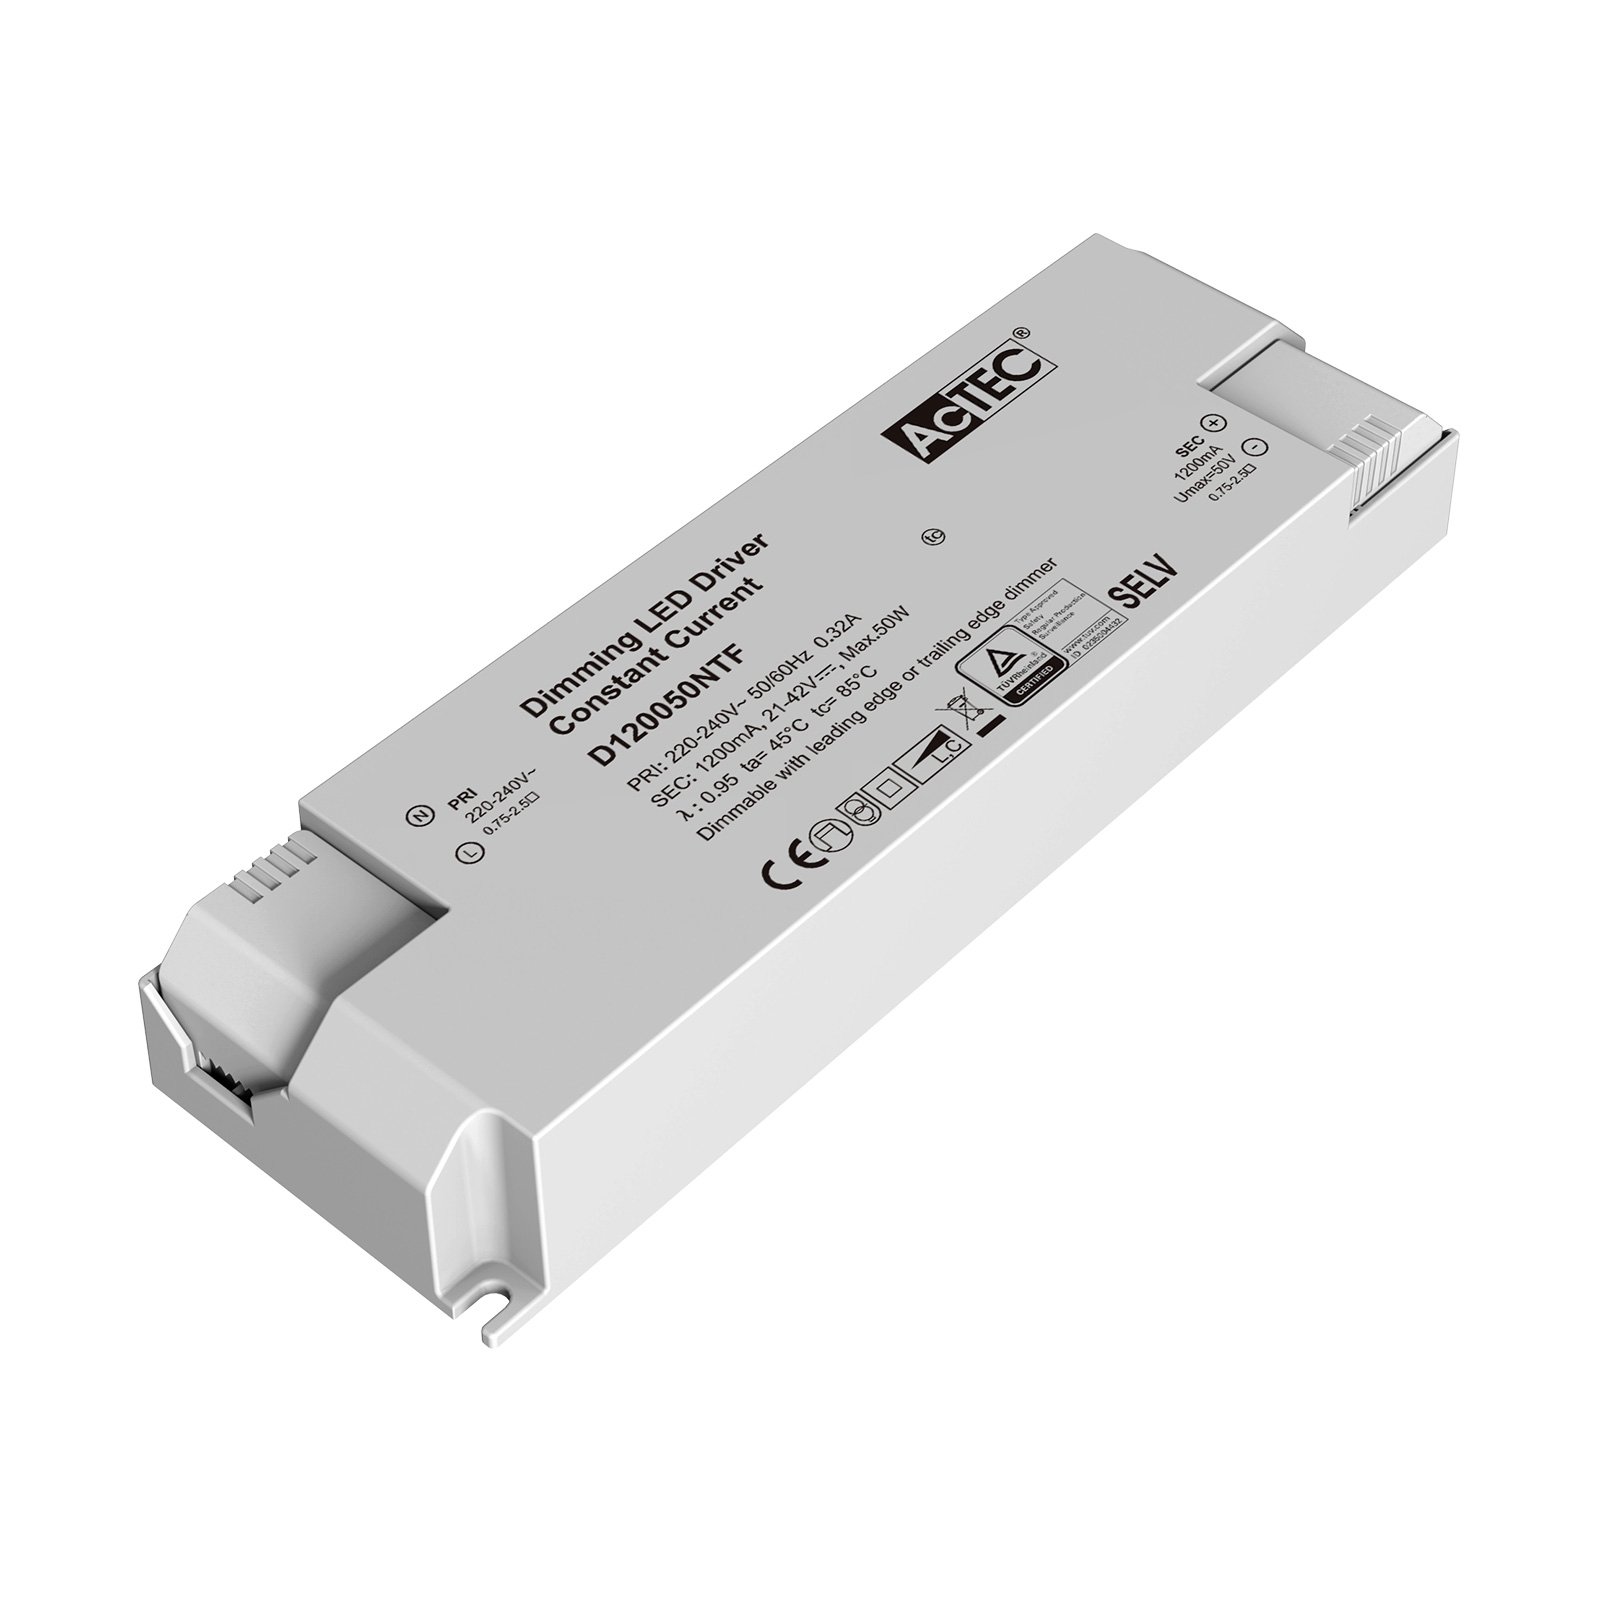 AcTEC Triac LED driver CC max. 50 W 1,200 mA